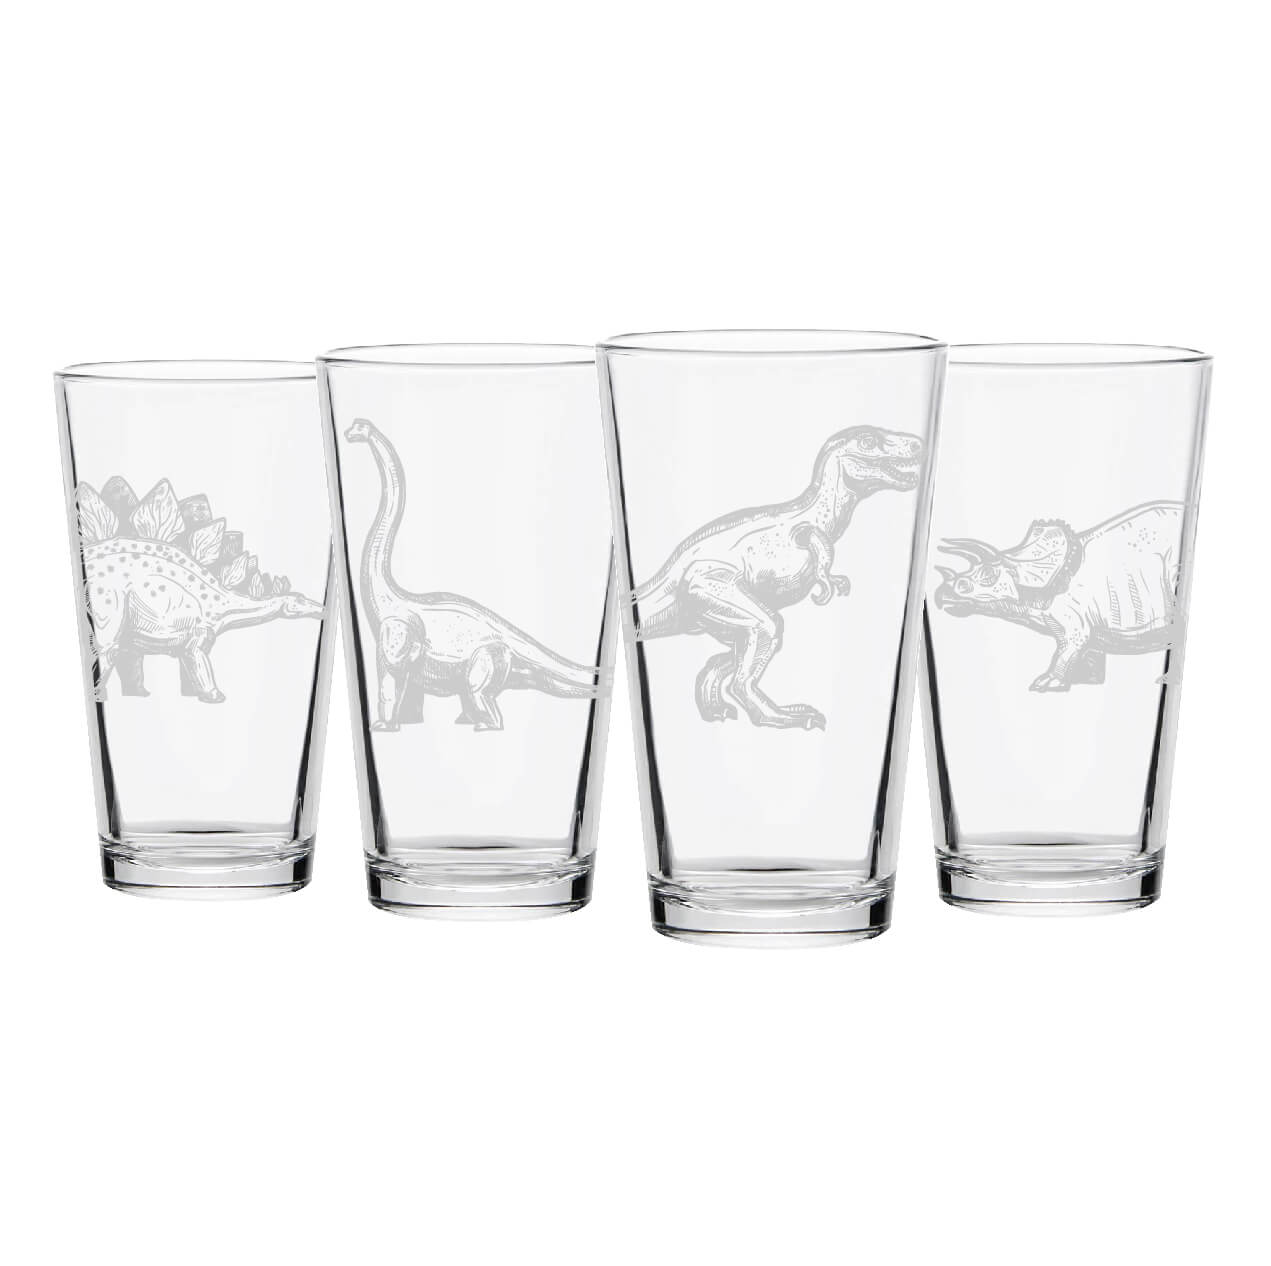 Dinosaur Pint Glasses- Set of 4